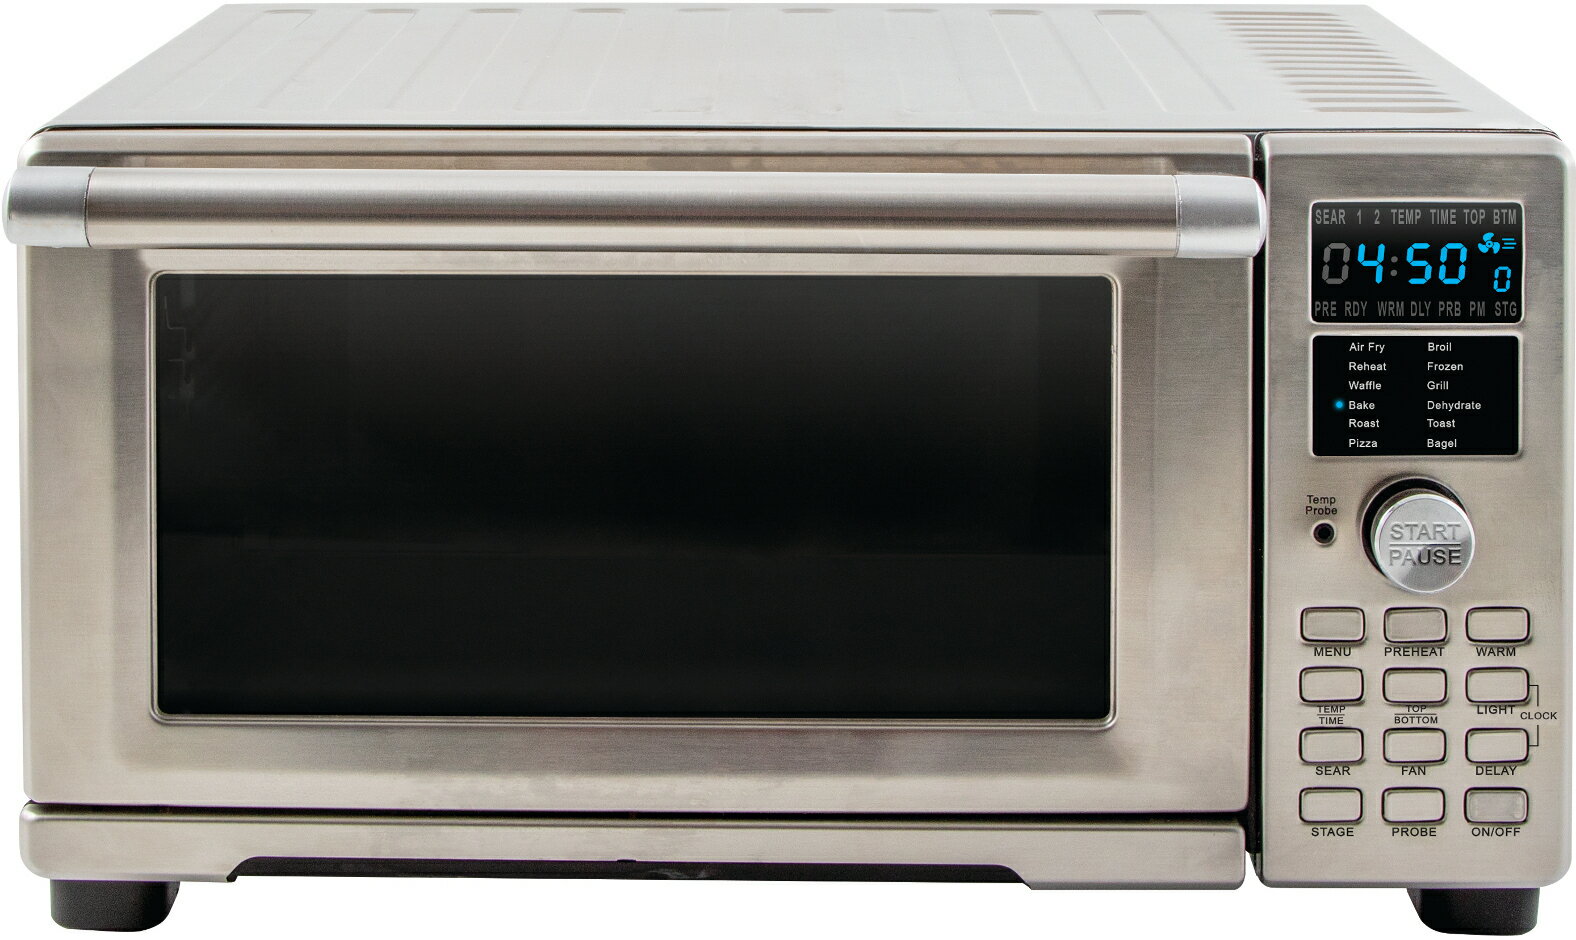 Lifestyle By Focus: NuWave Bravo XL Air Fryer/Toaster Oven | Rakuten.com